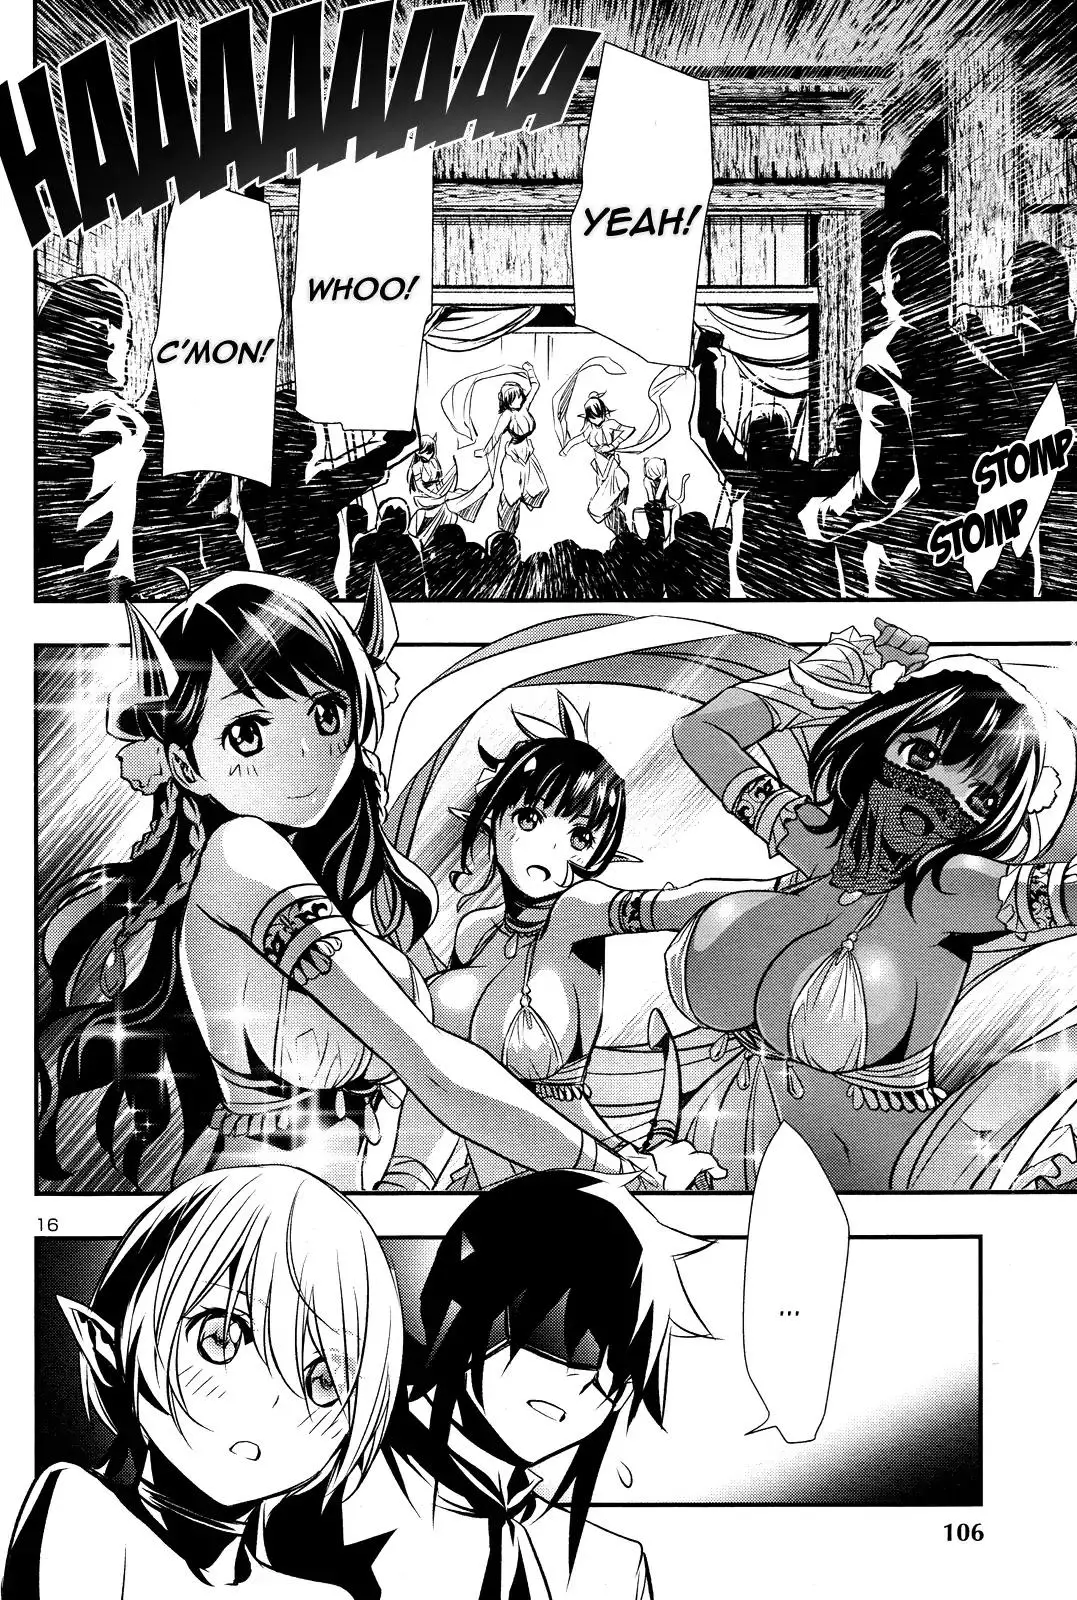 Shinju no Nectar - 15 page 13